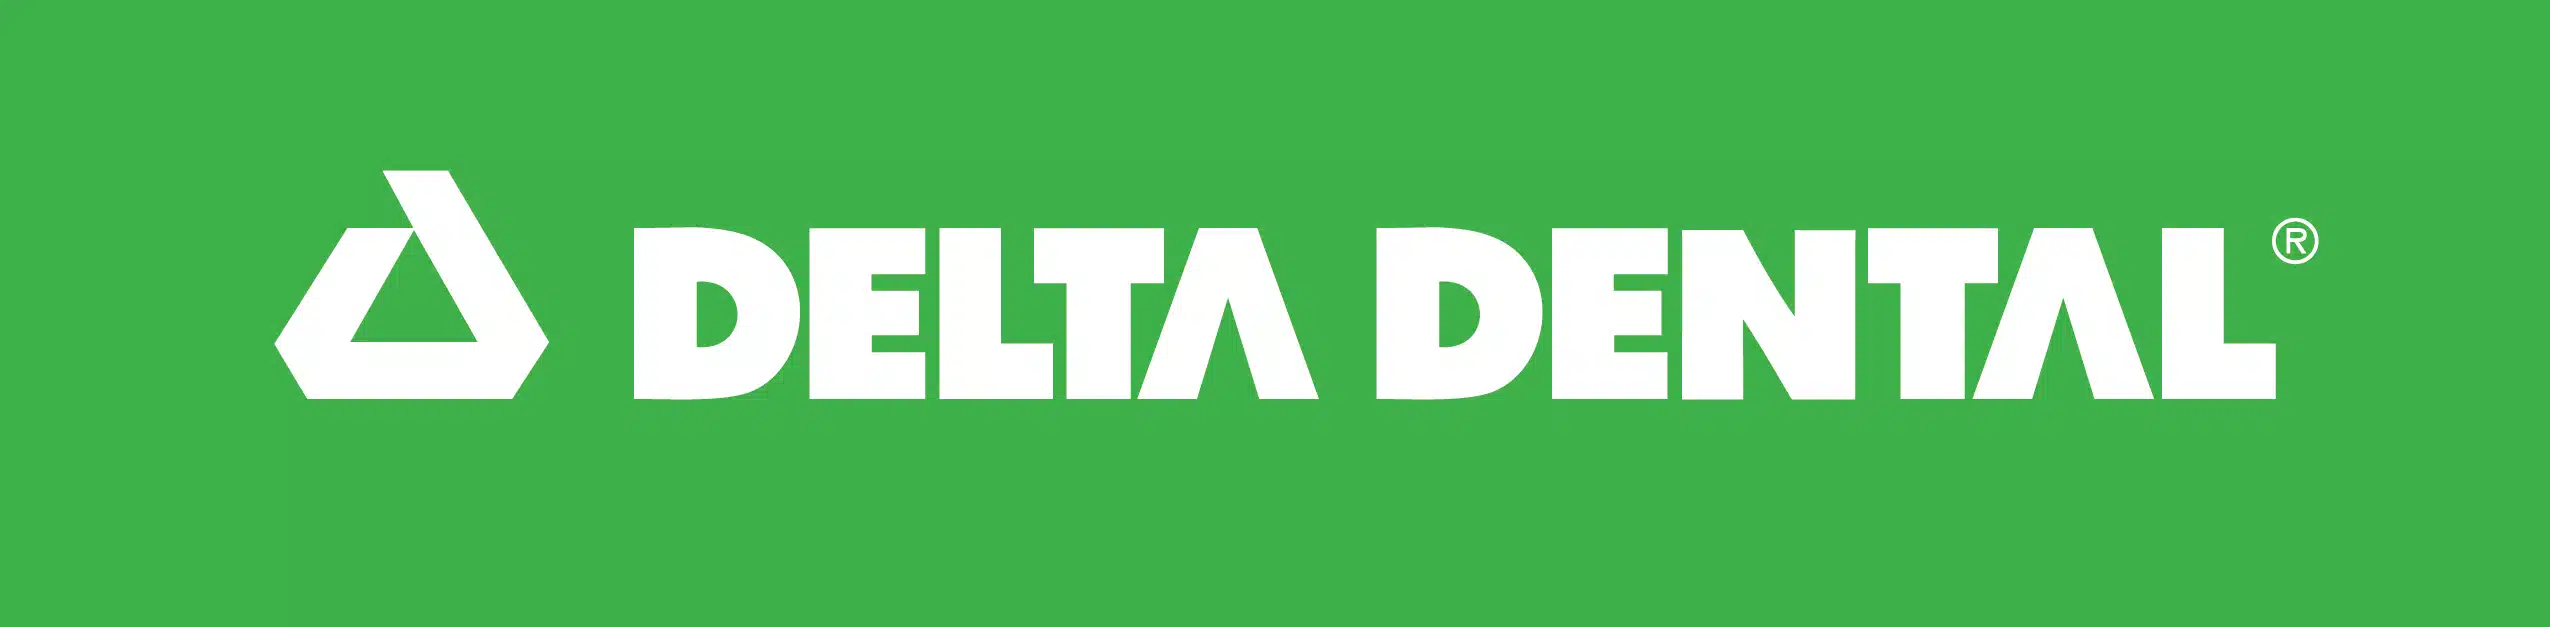 Green and white Delta Dental logo banner